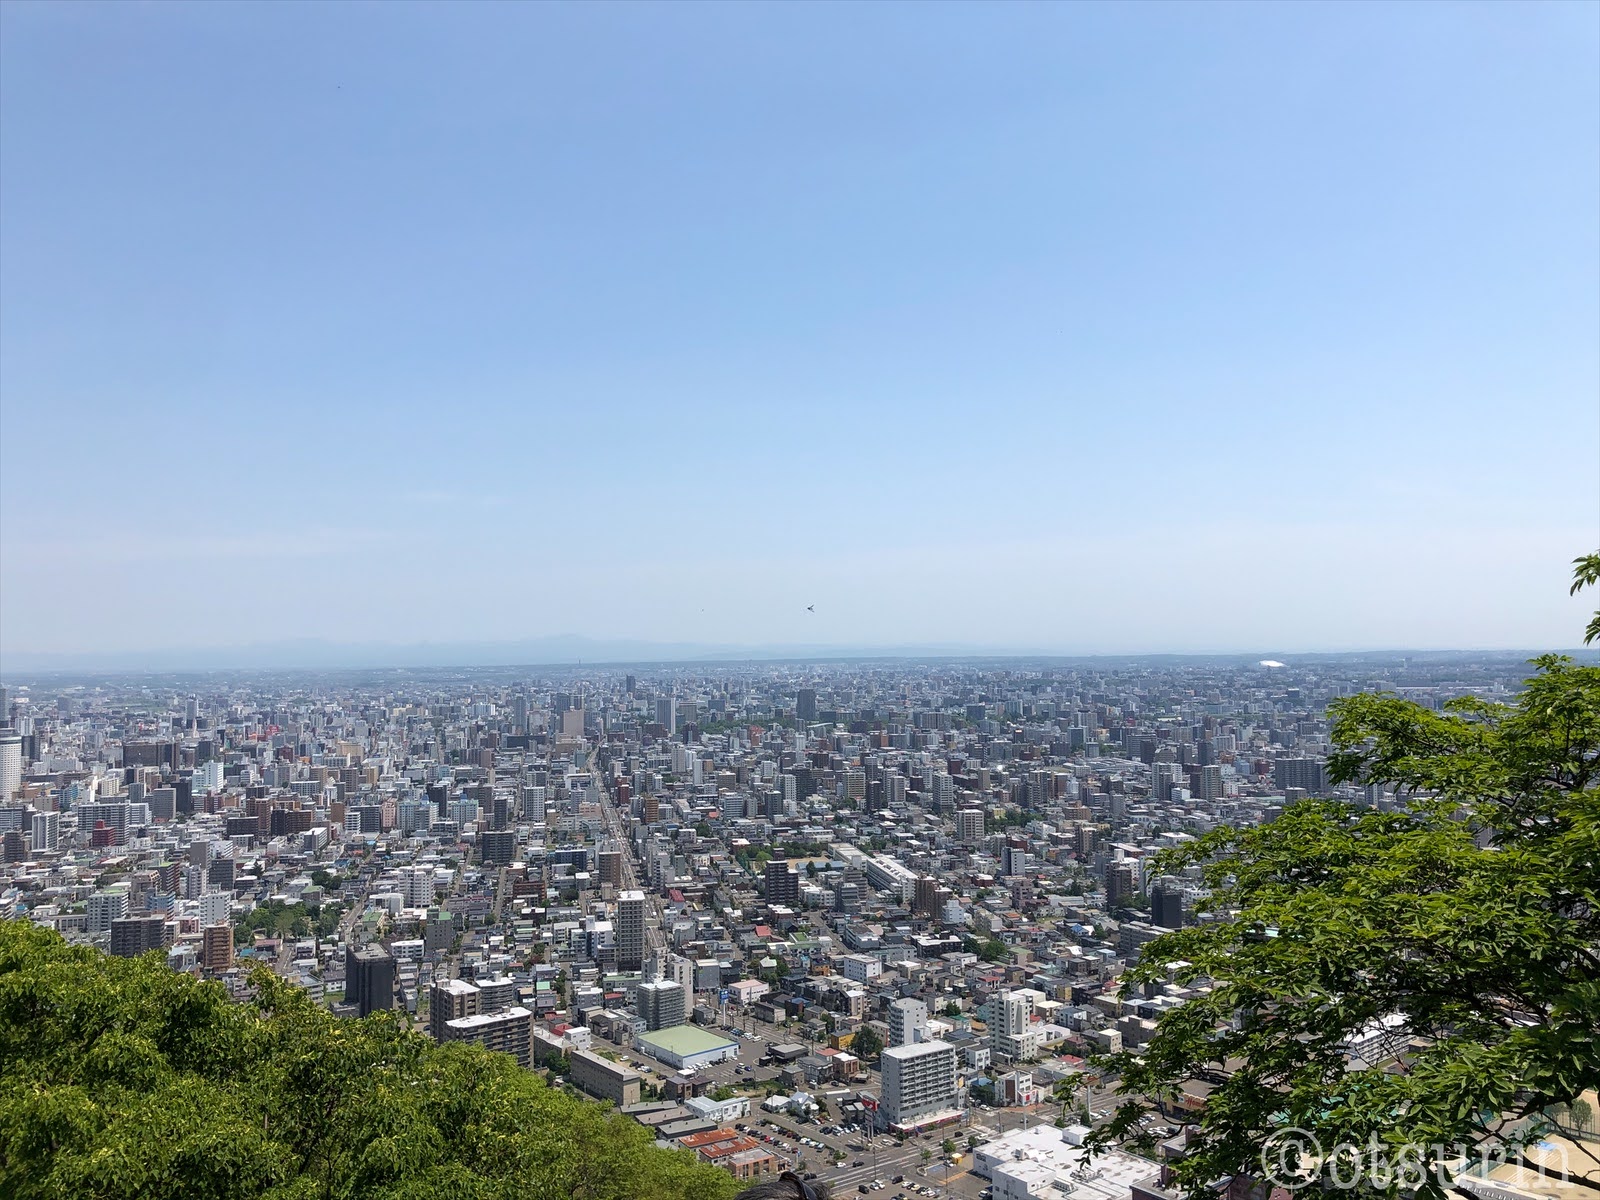 気楽に登れる札幌円山公園の円山で八十八体観音様めぐり オツリナブログ